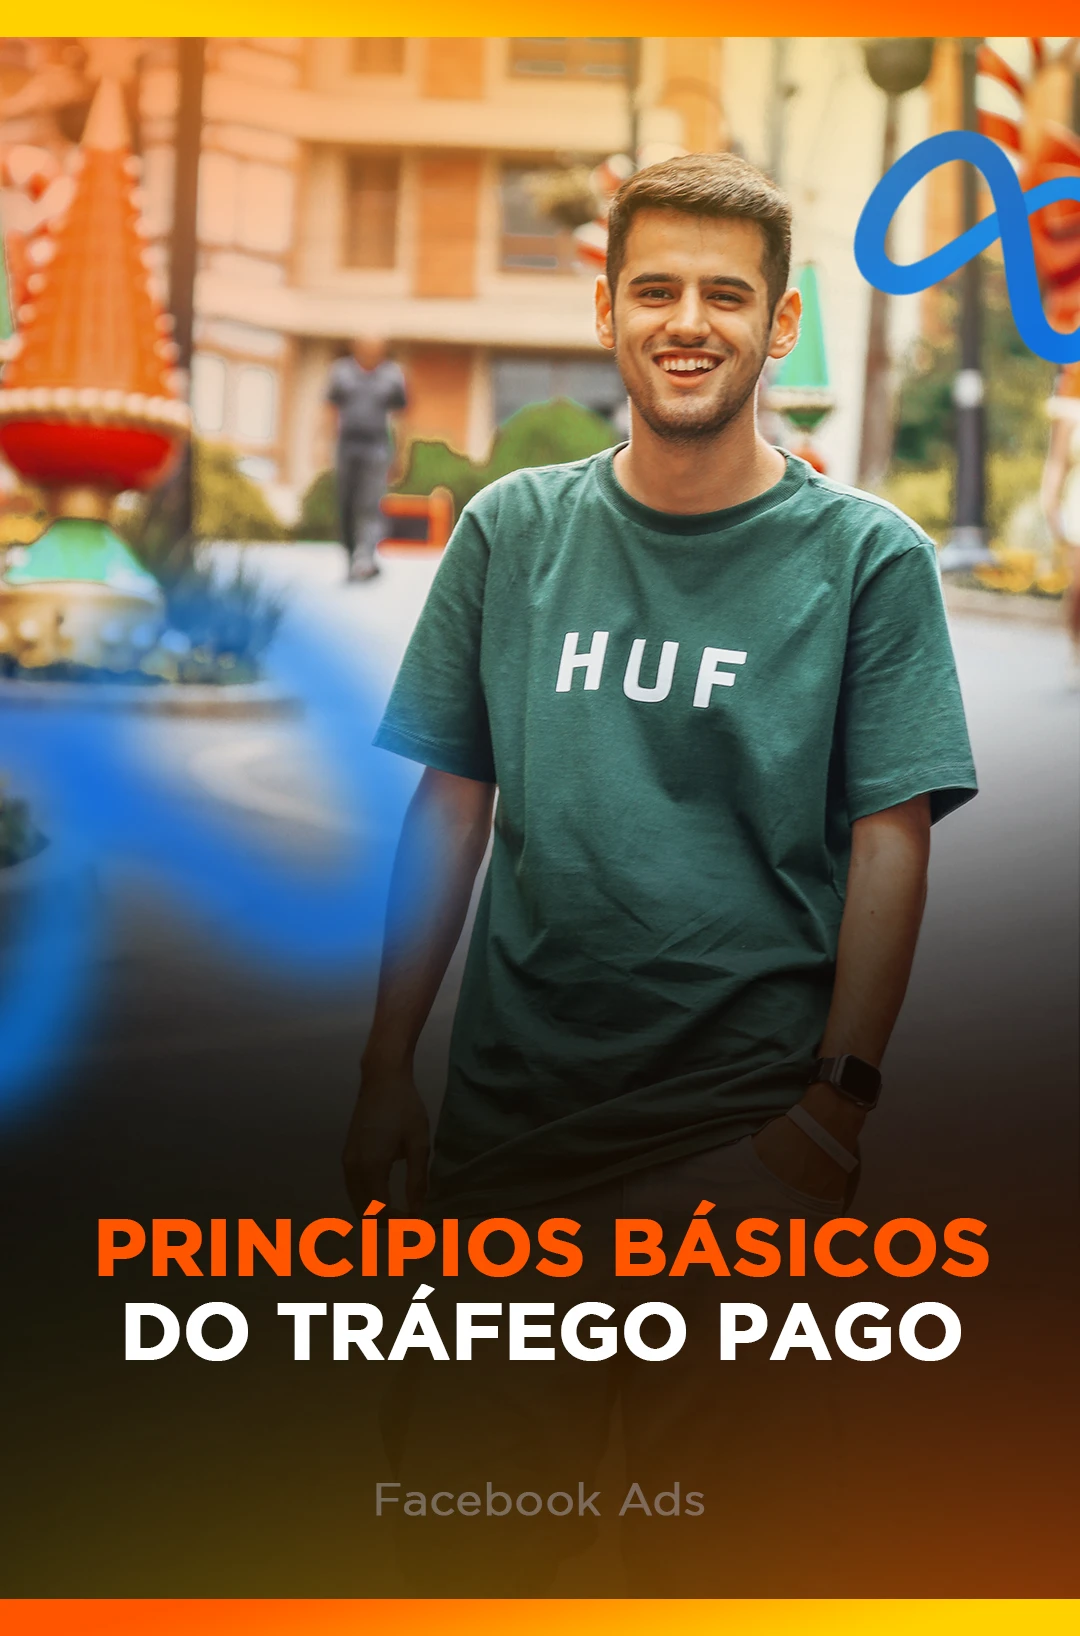 PRINCIPIOS BASICOS DO TRAFEGO PAGO - FACE ADS